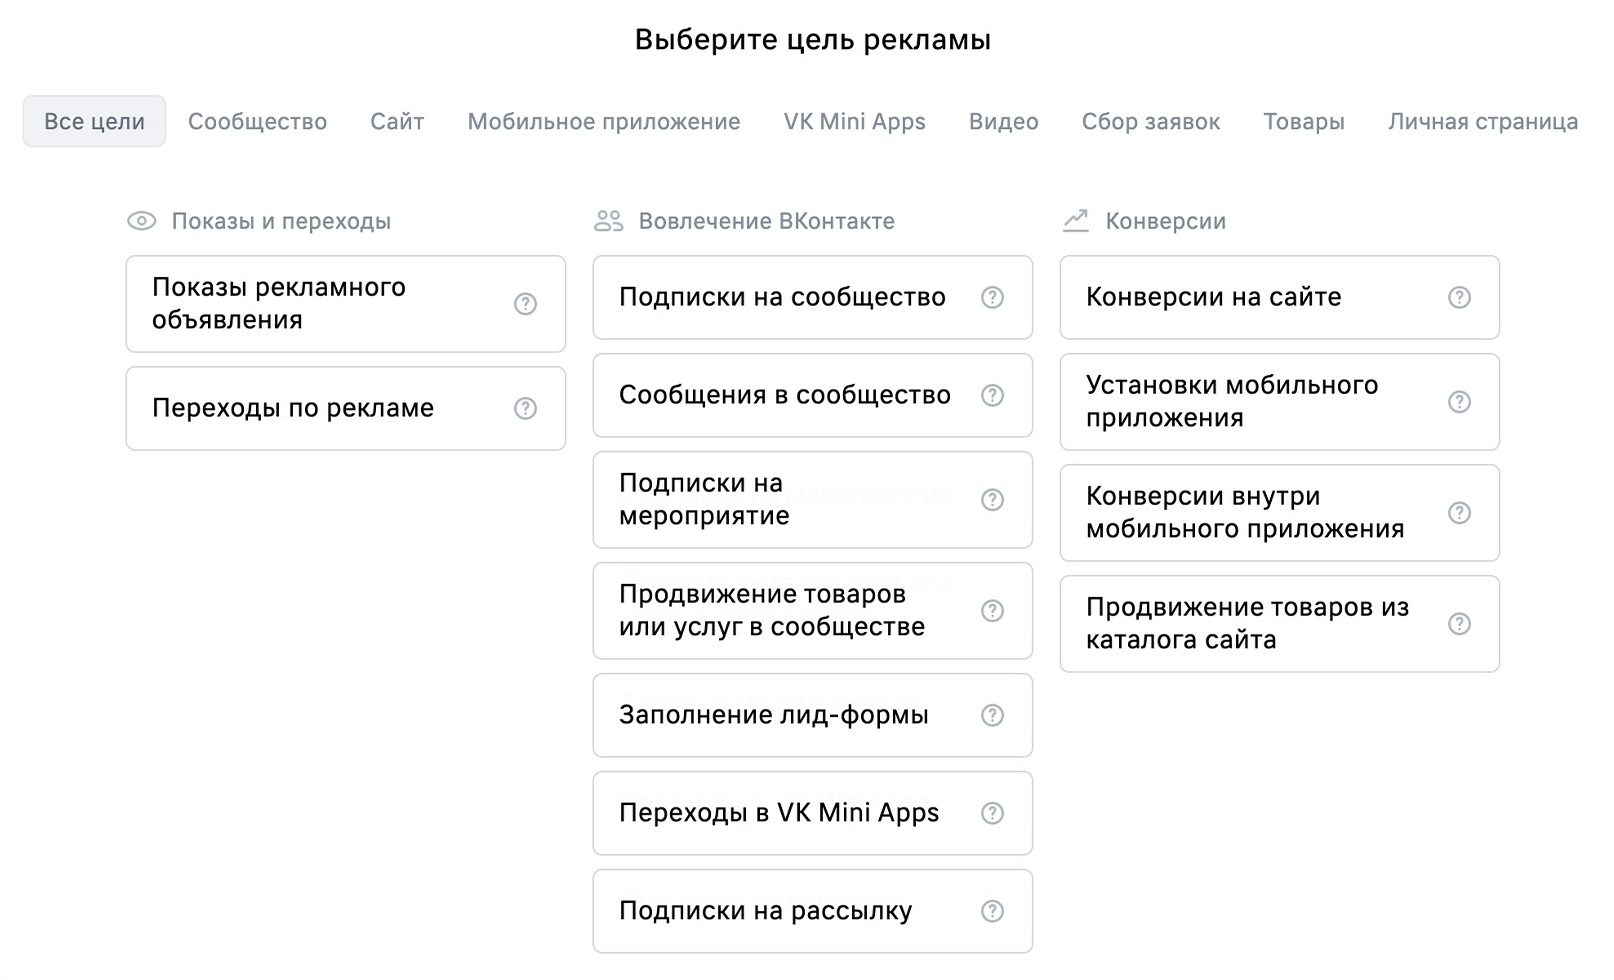 Выбор целей во ВКонтакте